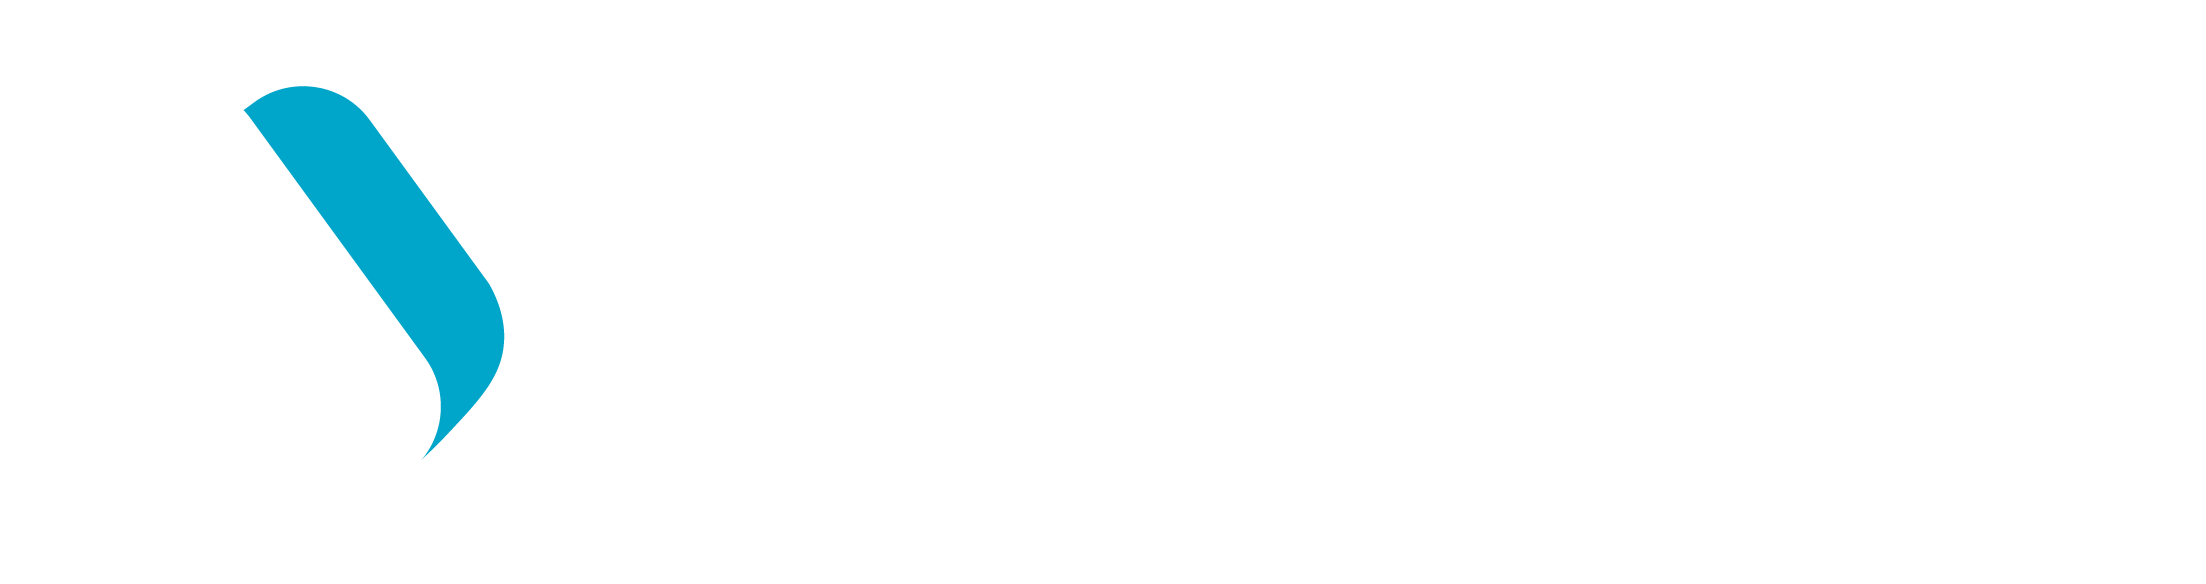 VRPlatform logo